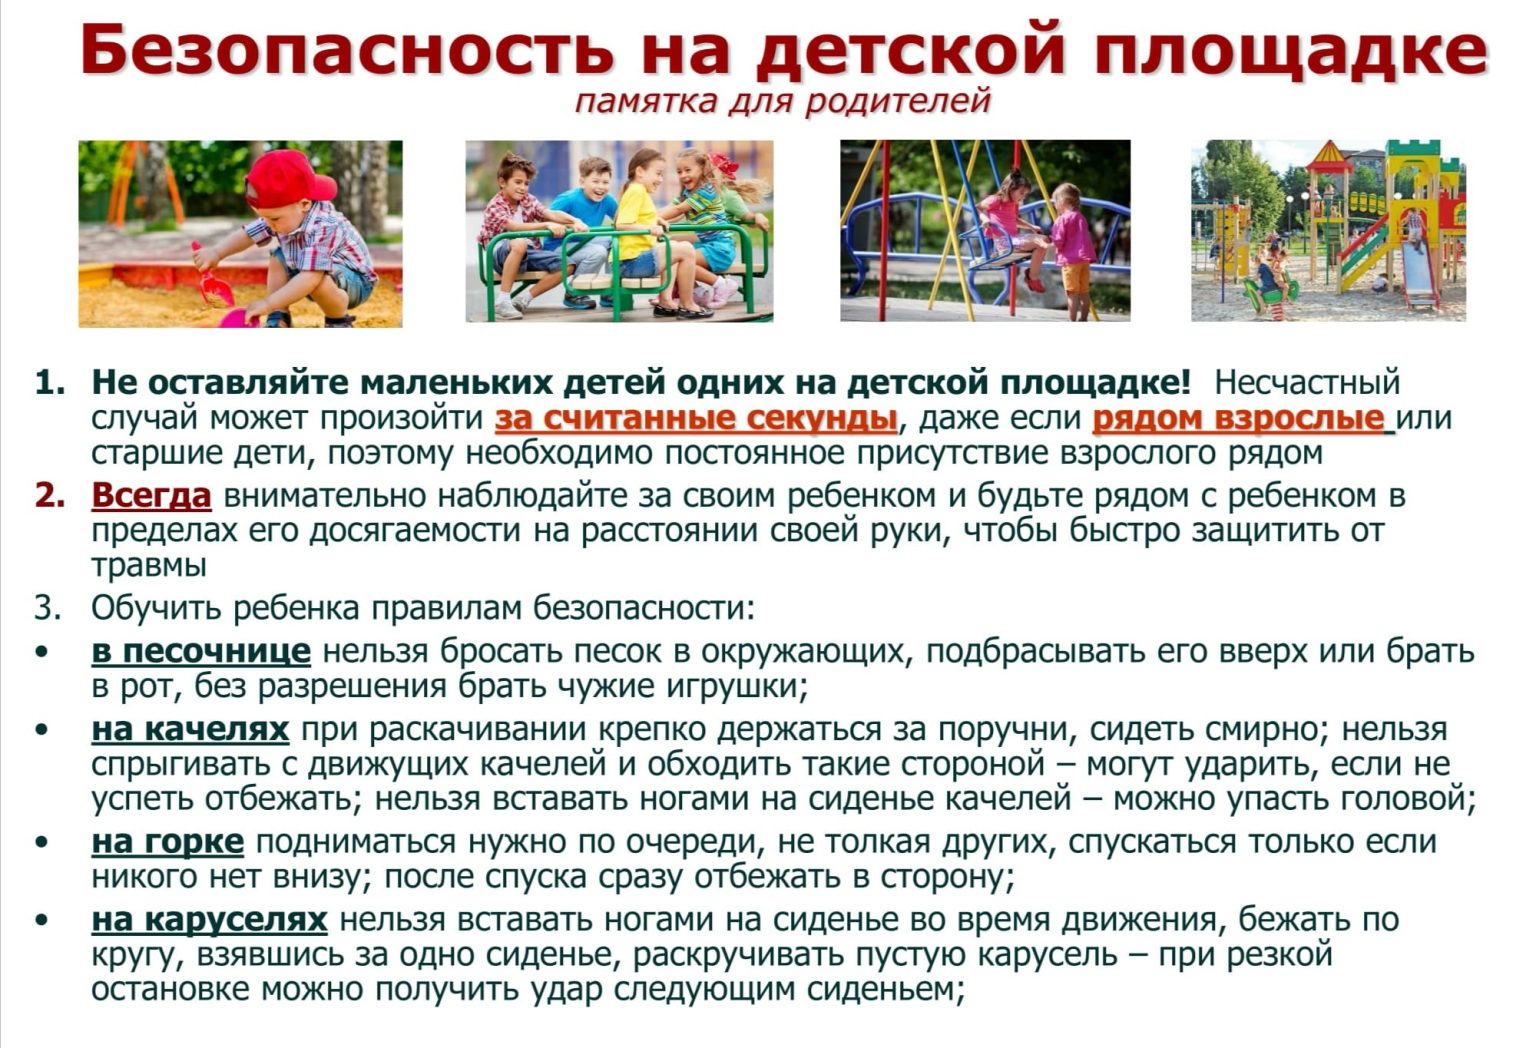 Безопасность детей на детской площадке 1536x1048 1